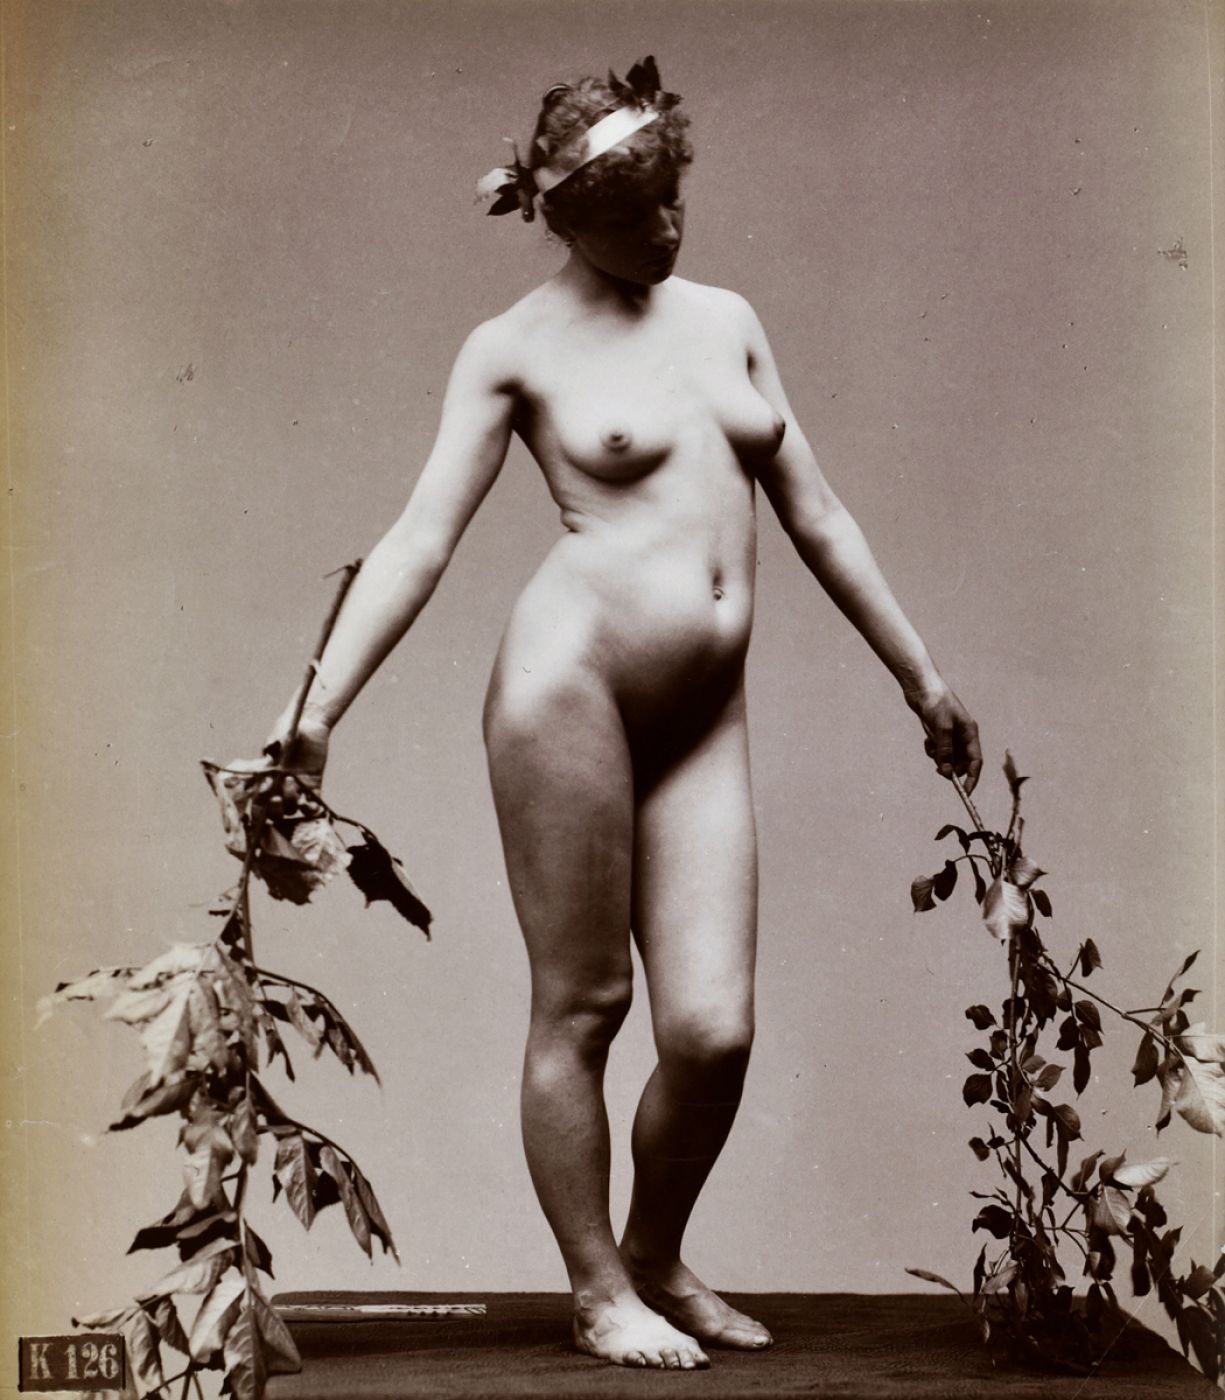 Hermann Heid, “Étude de nu aux rameaux”, 1885 ca.